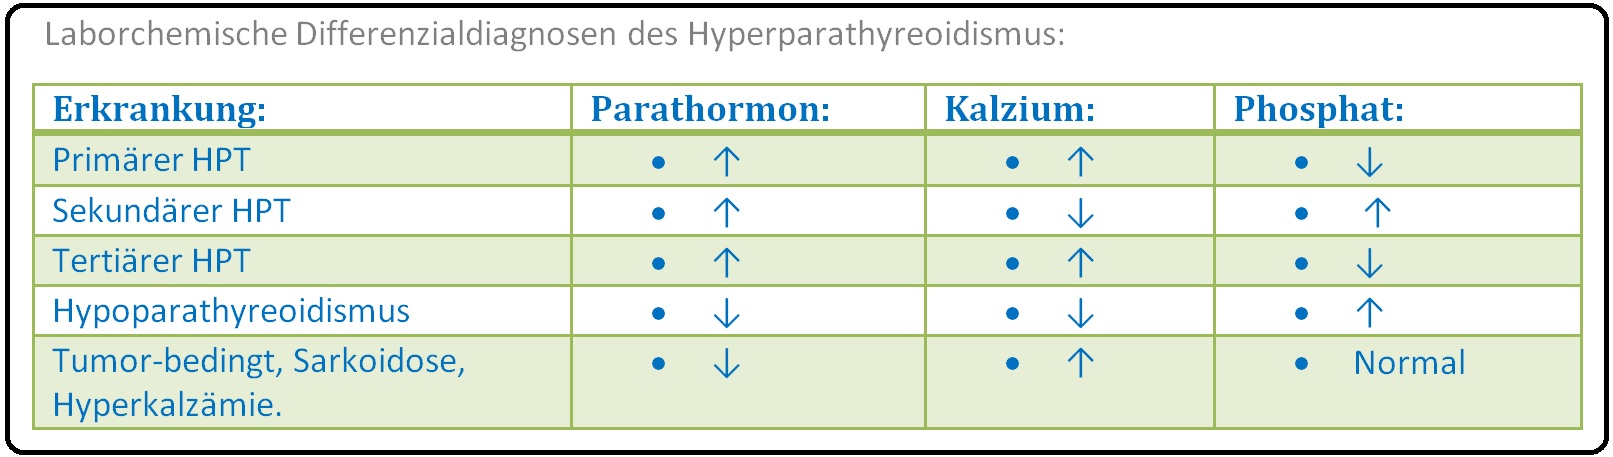 648 Laborchemische Differenzialdiagnosen des Hyperparathyreoidismus